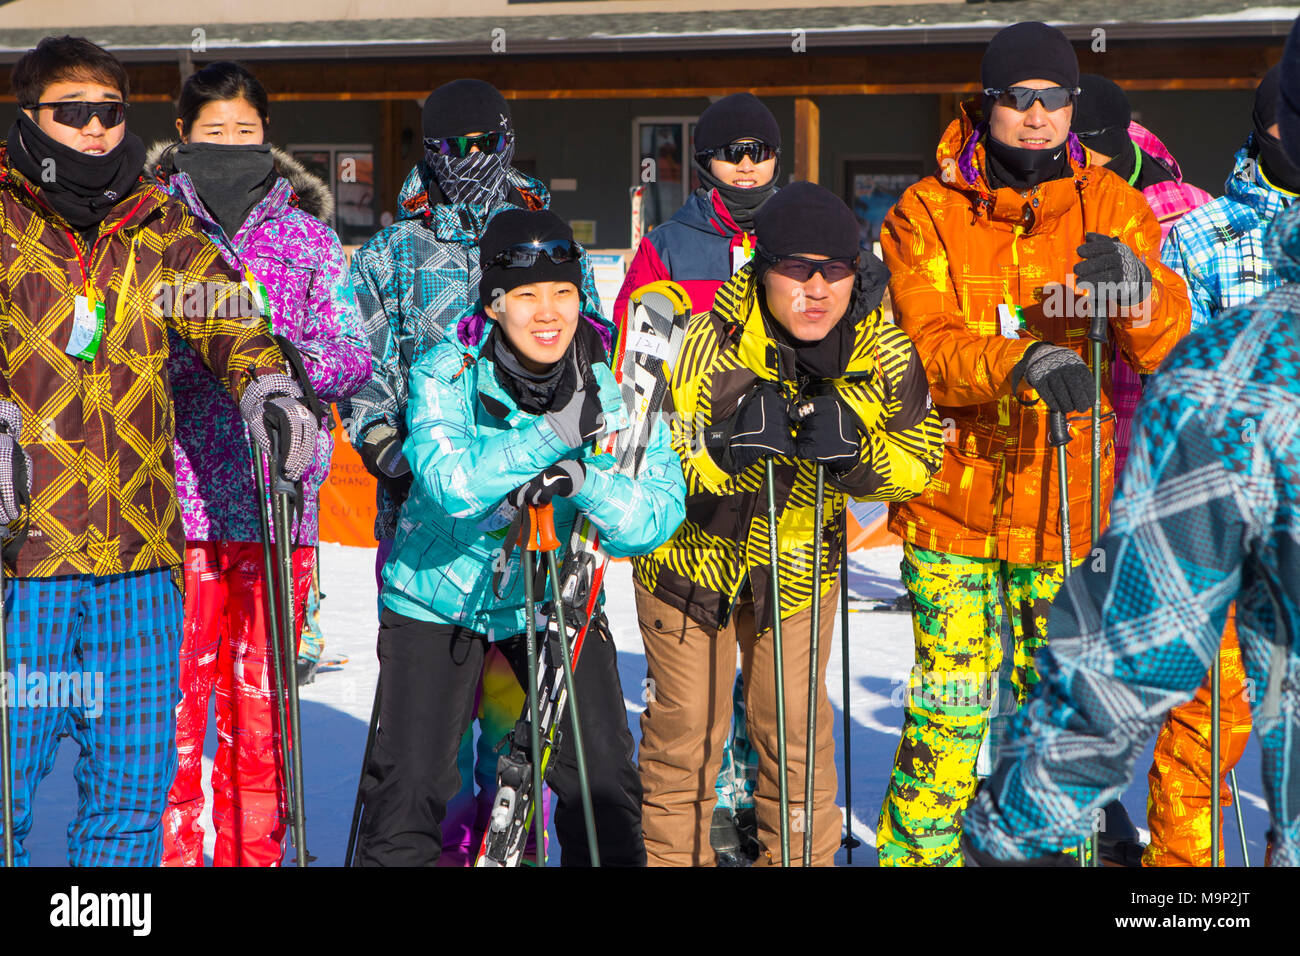 Un grupo de jóvenes coreanos en el Alpensia resort en Corea del Sur. Tradicionalmente los esquiadores vestido de brillantes colores trajes de esquí. El Alpensia Resort es un resort de esquí y una atracción turística. Está ubicado en el territorio del municipio de Daegwallyeong-myeon, en el condado de Pyeongchang, acoger los Juegos Olímpicos de Invierno en febrero de 2018. La estación de esquí es de aproximadamente 2,5 horas de Seúl o Incheon Airport en coche, predominantemente todo autopista. Alpensia tiene seis pistas para el esquí y el snowboard, con carreras de hasta 1,4 km (0,87 millas) de largo, para principiantes y esquiadores avanzados, así como una zona reservada para Foto de stock